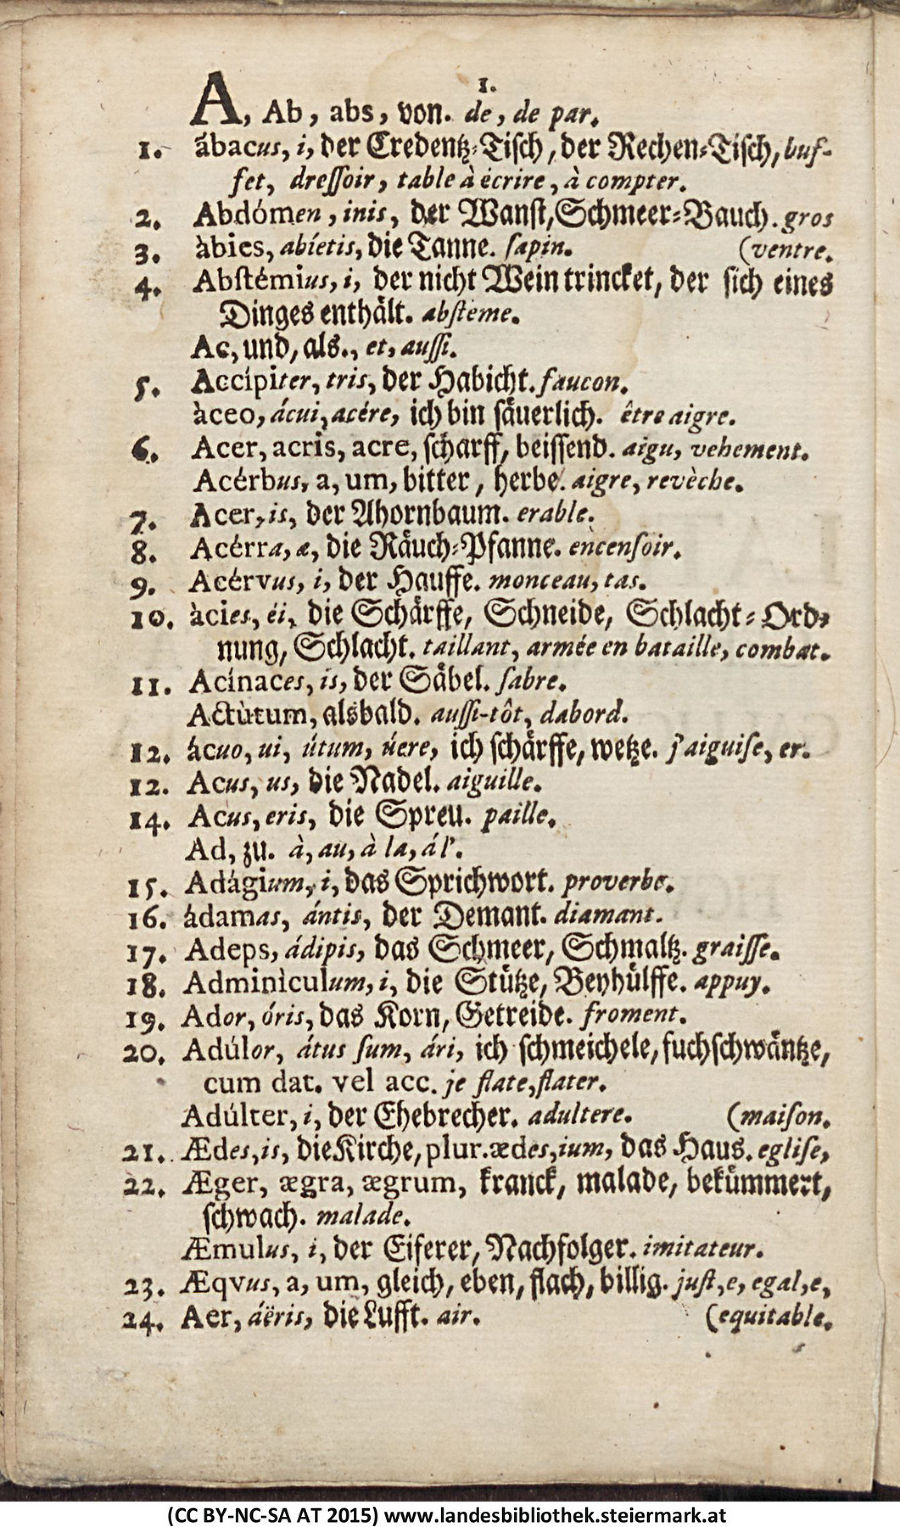 Lateinisches Wörterbuch - Primitiva Latinae Linguae